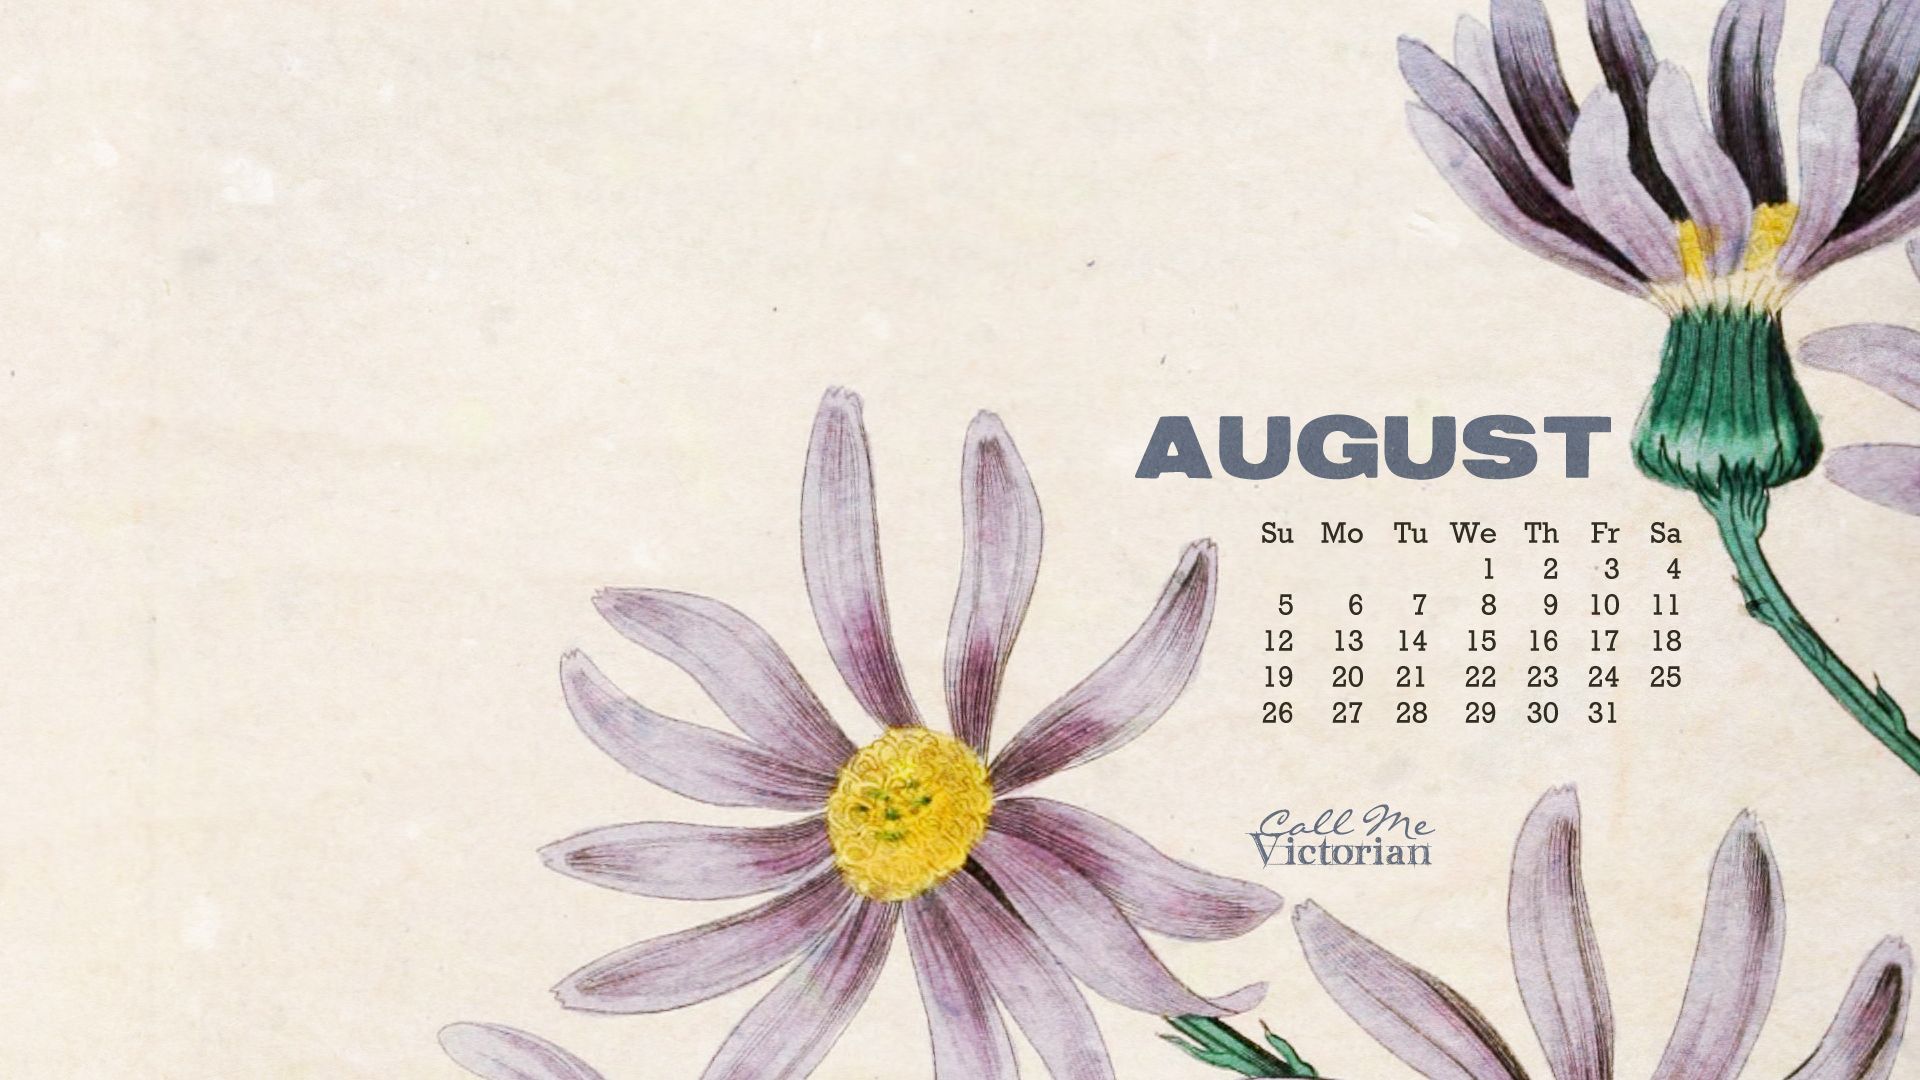 HD wallpaper, August, 2013, Calendar